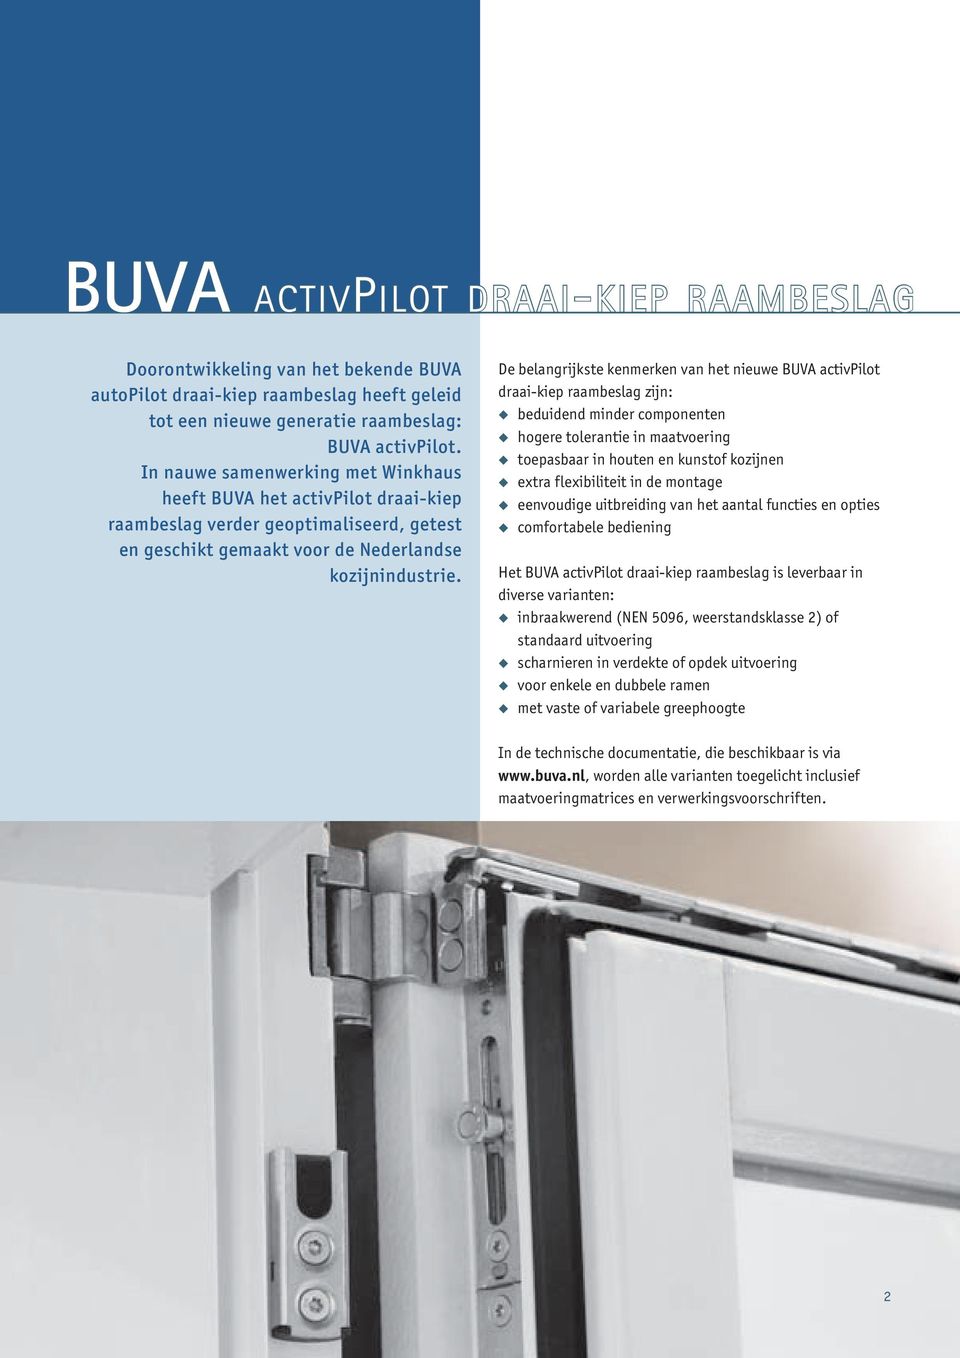 De belangrijkste kenmerken van het nieuwe BUVA activpilot draai-kiep raambeslag zijn: beduidend minder componenten hogere tolerantie in maatvoering toepasbaar in houten en kunstof kozijnen extra